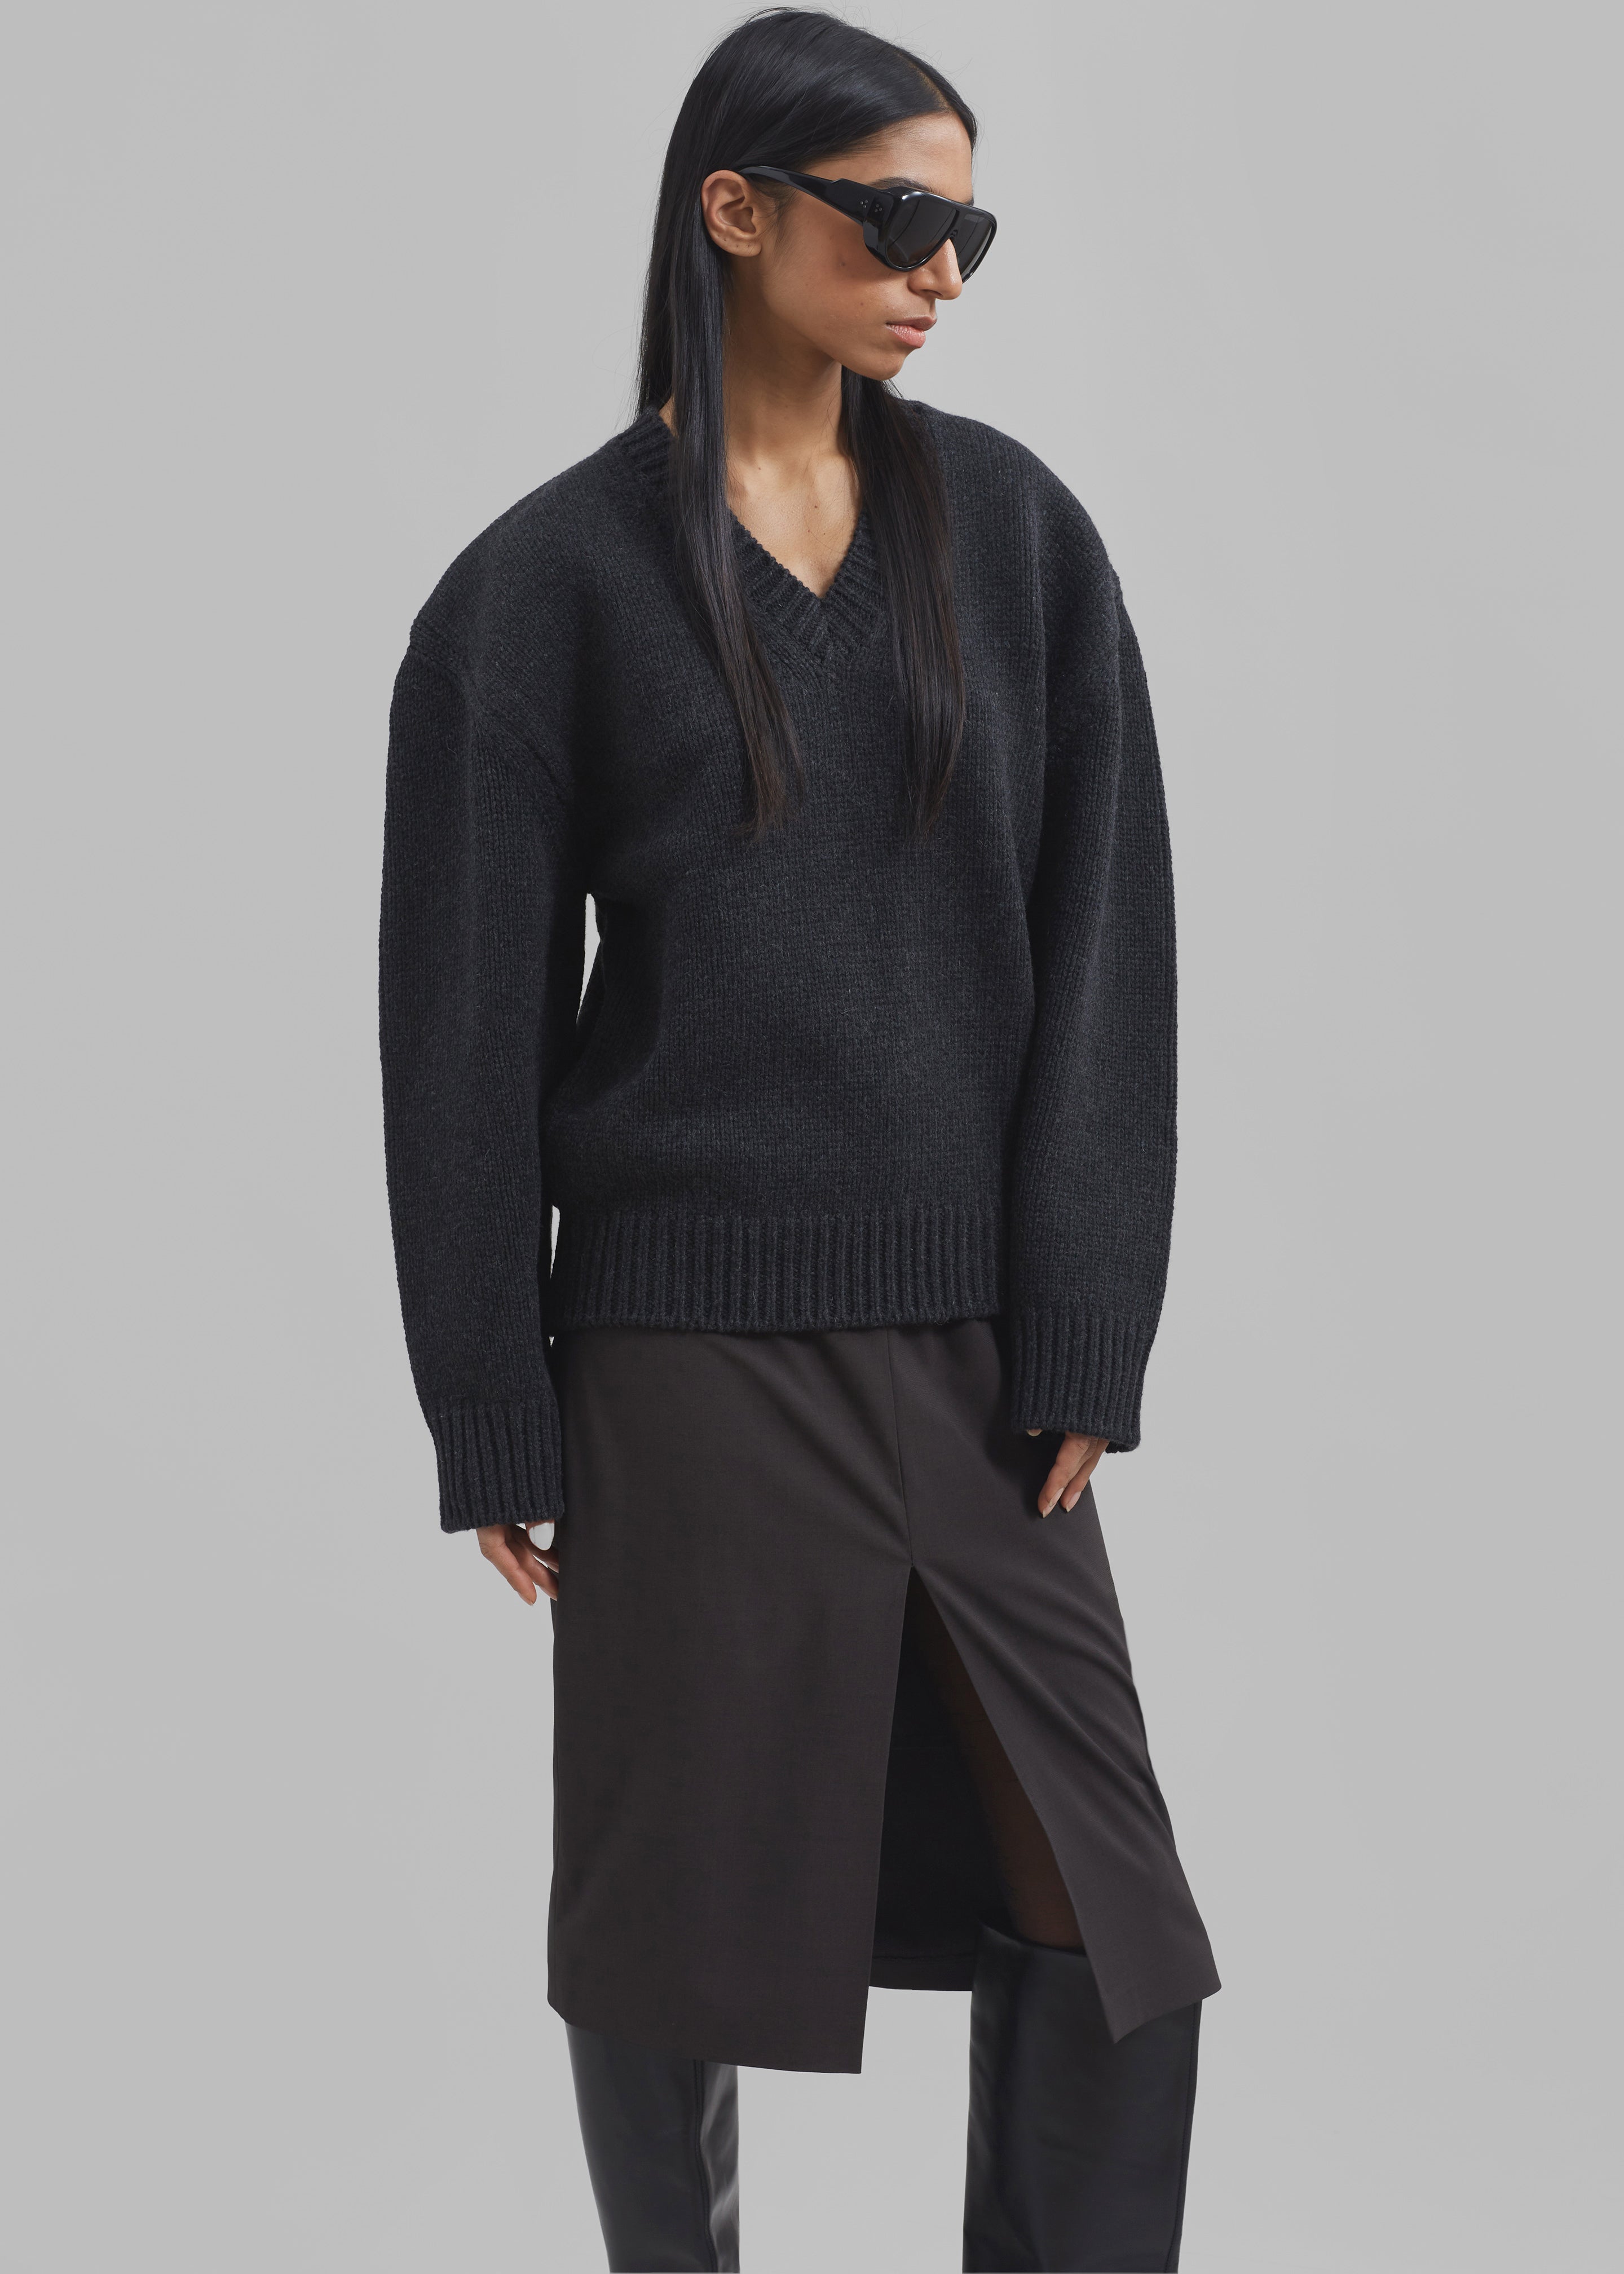 Edina Two Tone Wool Sweater - Charcoal - 3